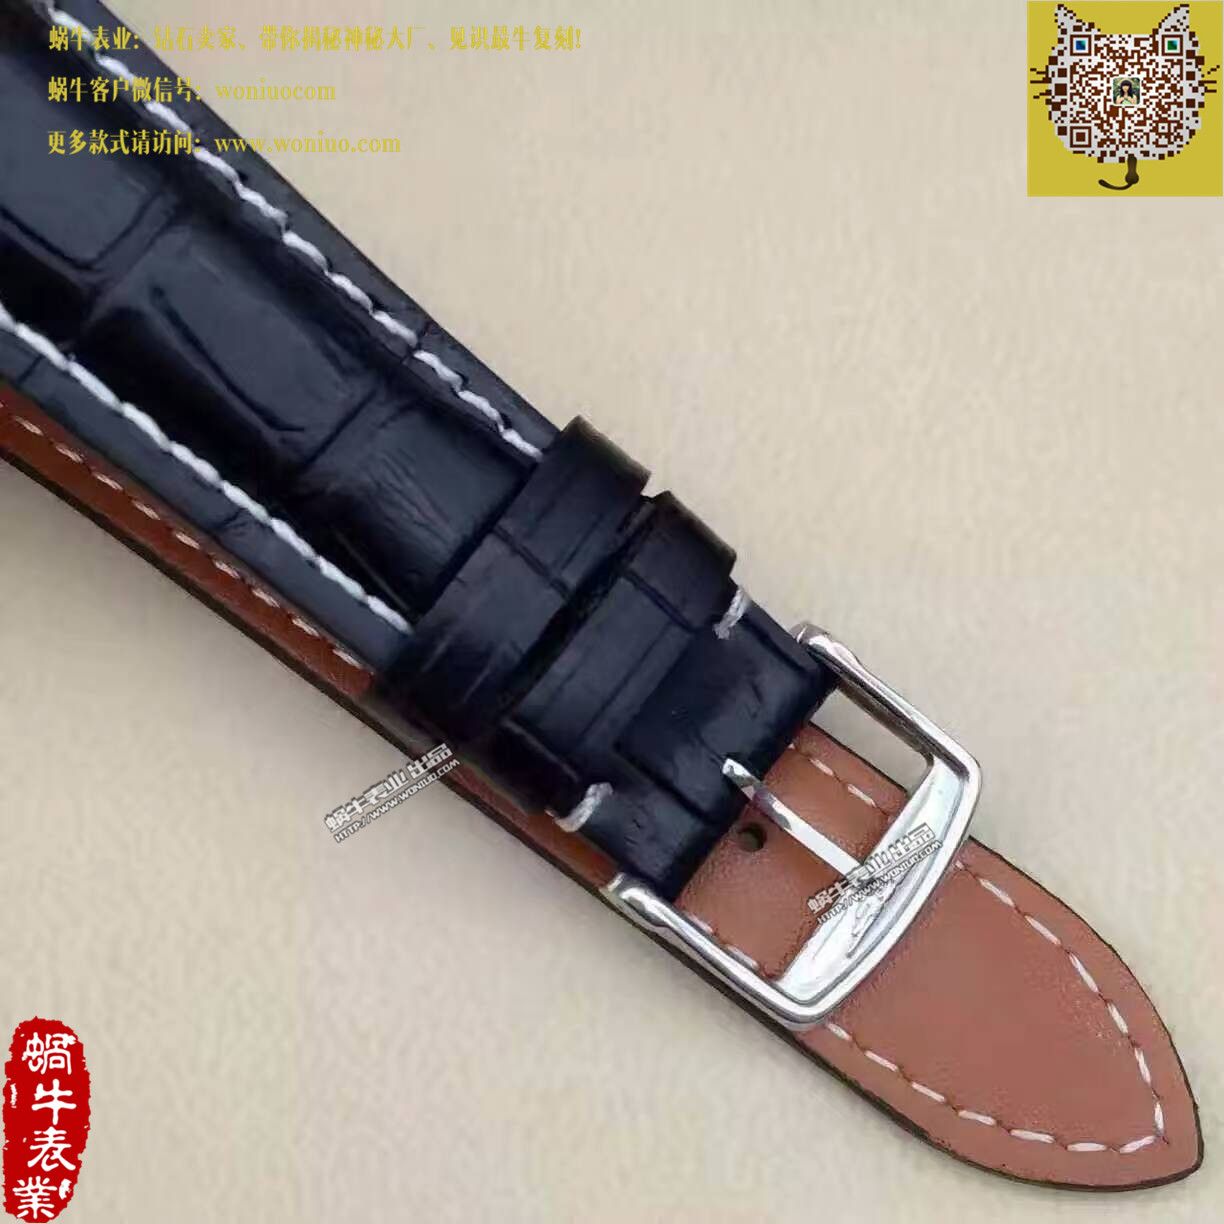 【TW台湾厂1比1顶级高仿手表】浪琴SAINT-IMIER索伊米亚 系列L2.753.4.72.6腕表 / L085